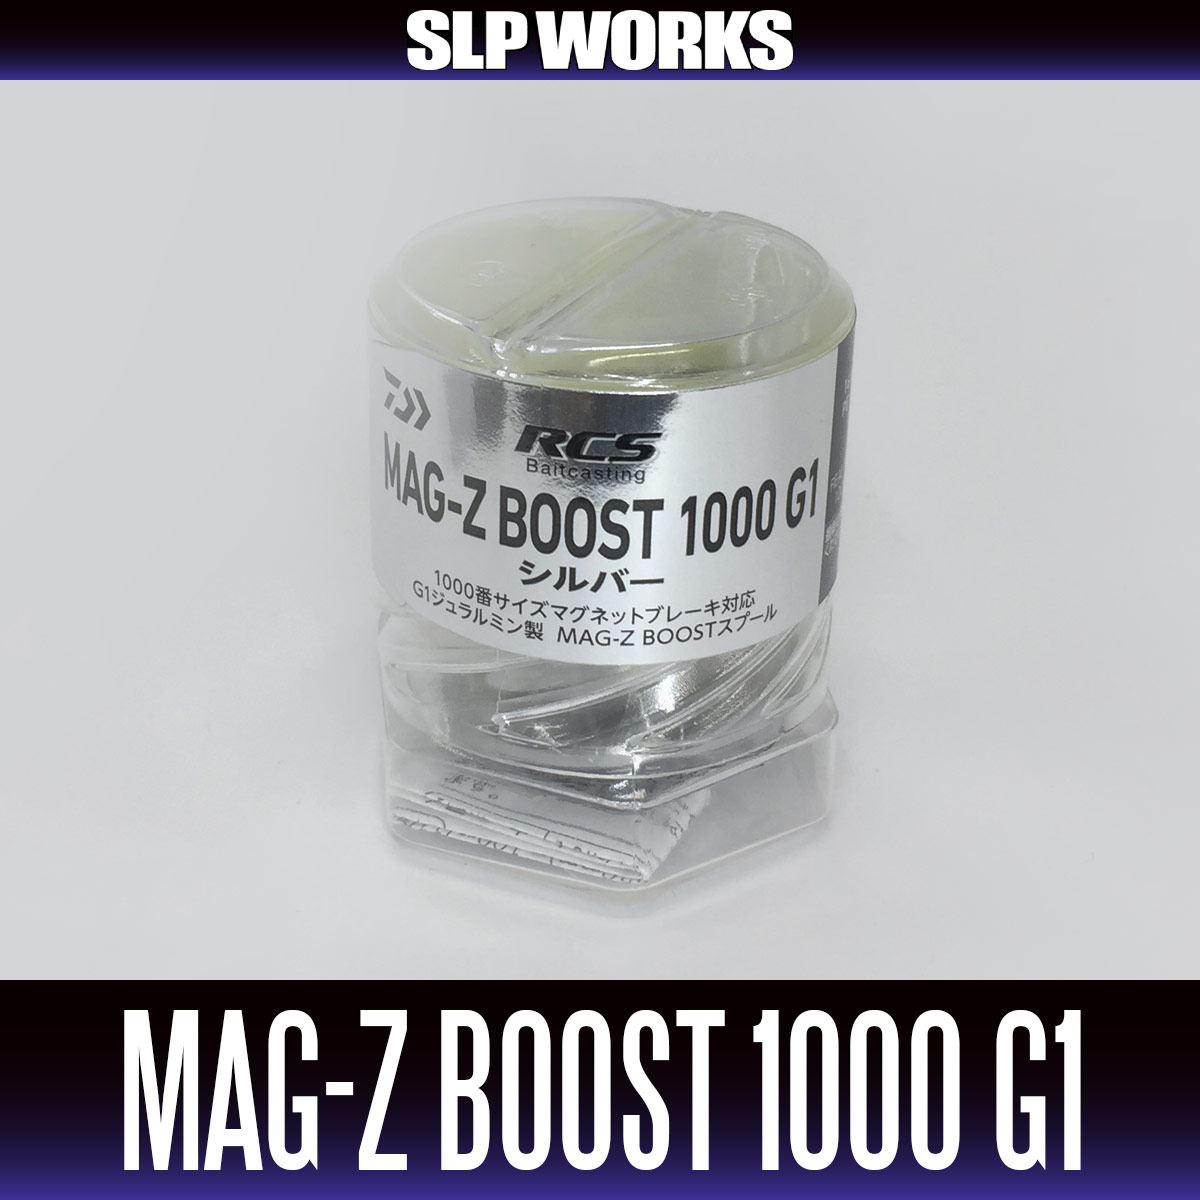 [DAIWA/SLP WORKS] RCSB MAG-Z BOOST 1000 Spool G1 [SILVER]